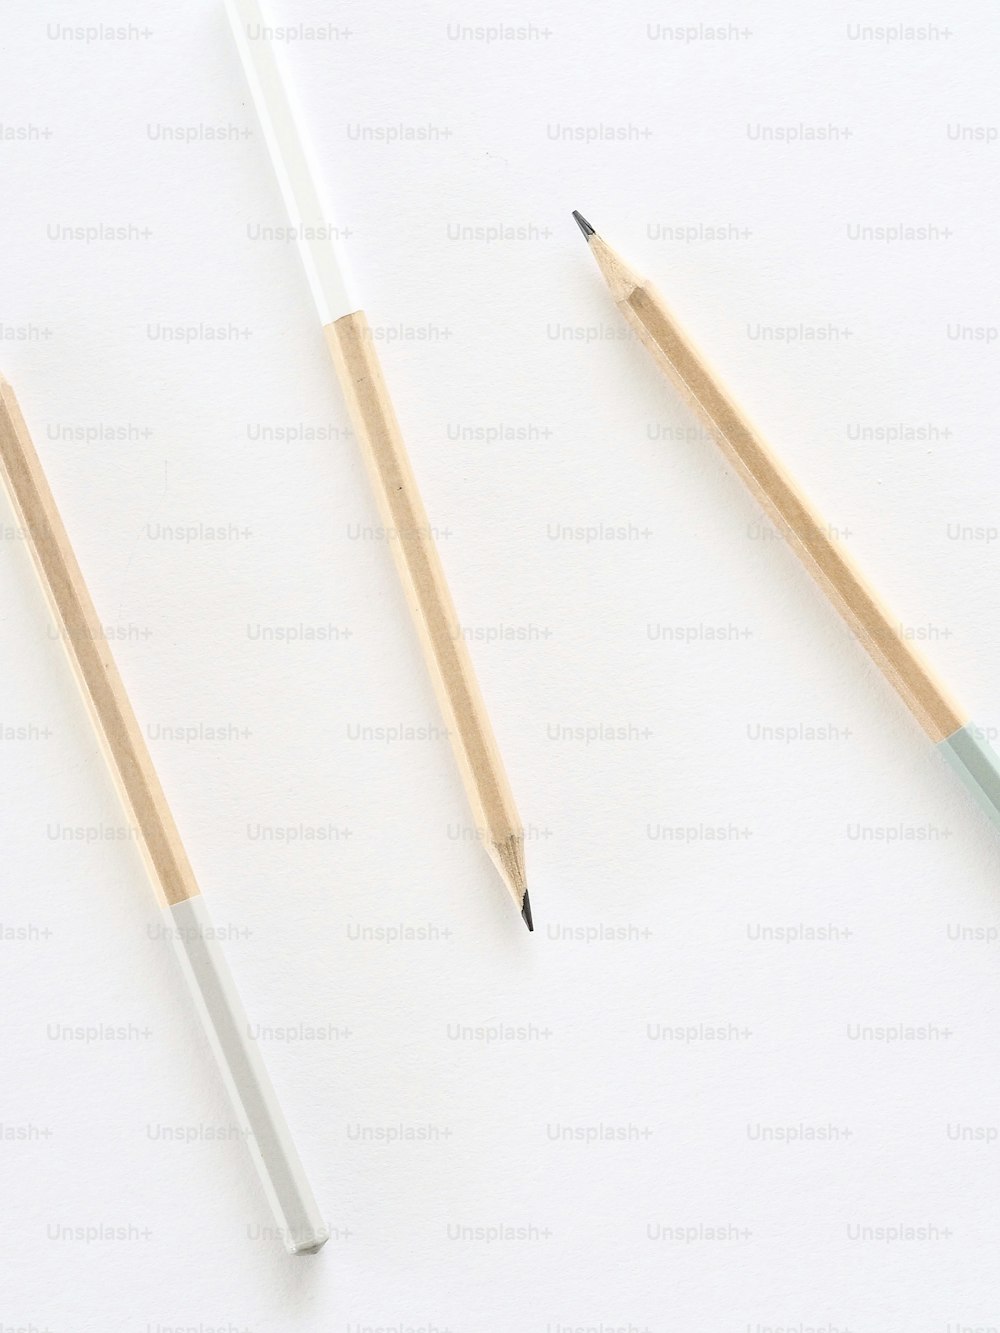 dos lápices y un sacapuntas sobre una superficie blanca